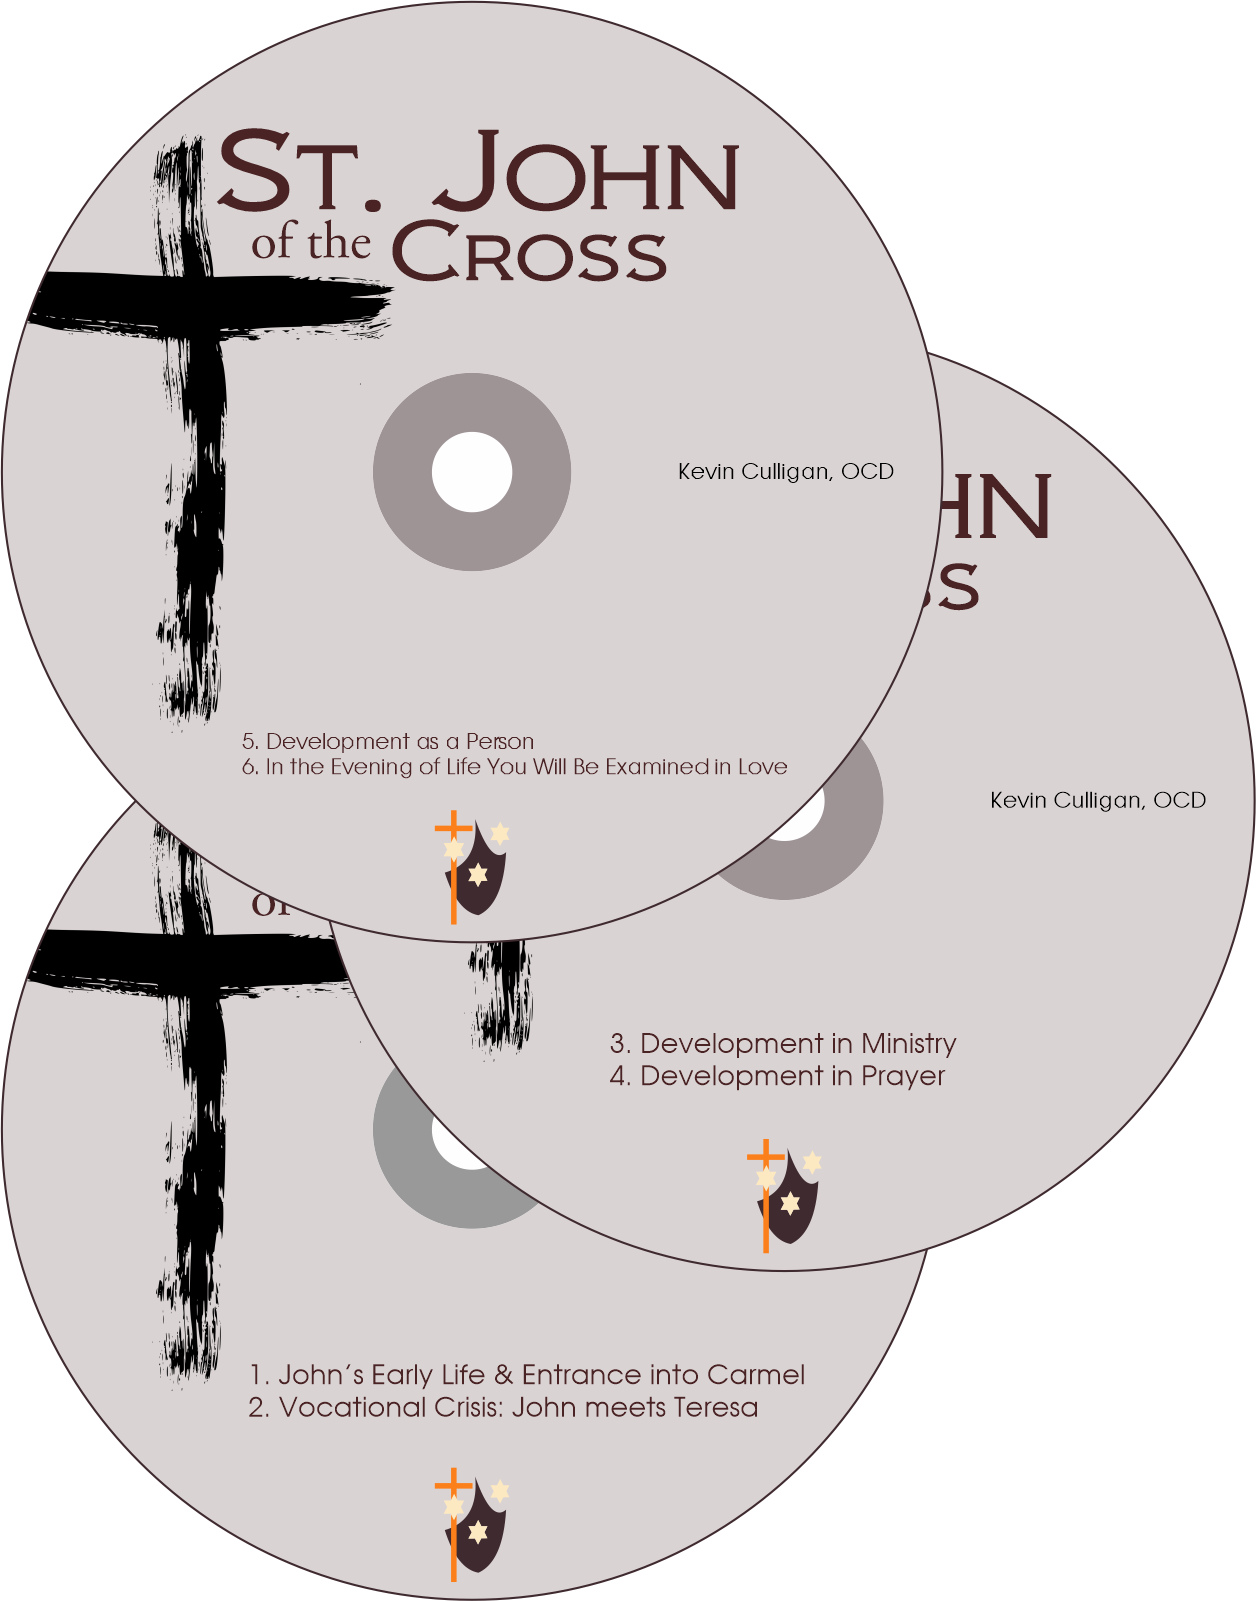 St. John of the Cross: Complete Series (DVD) – Carmelite Institute